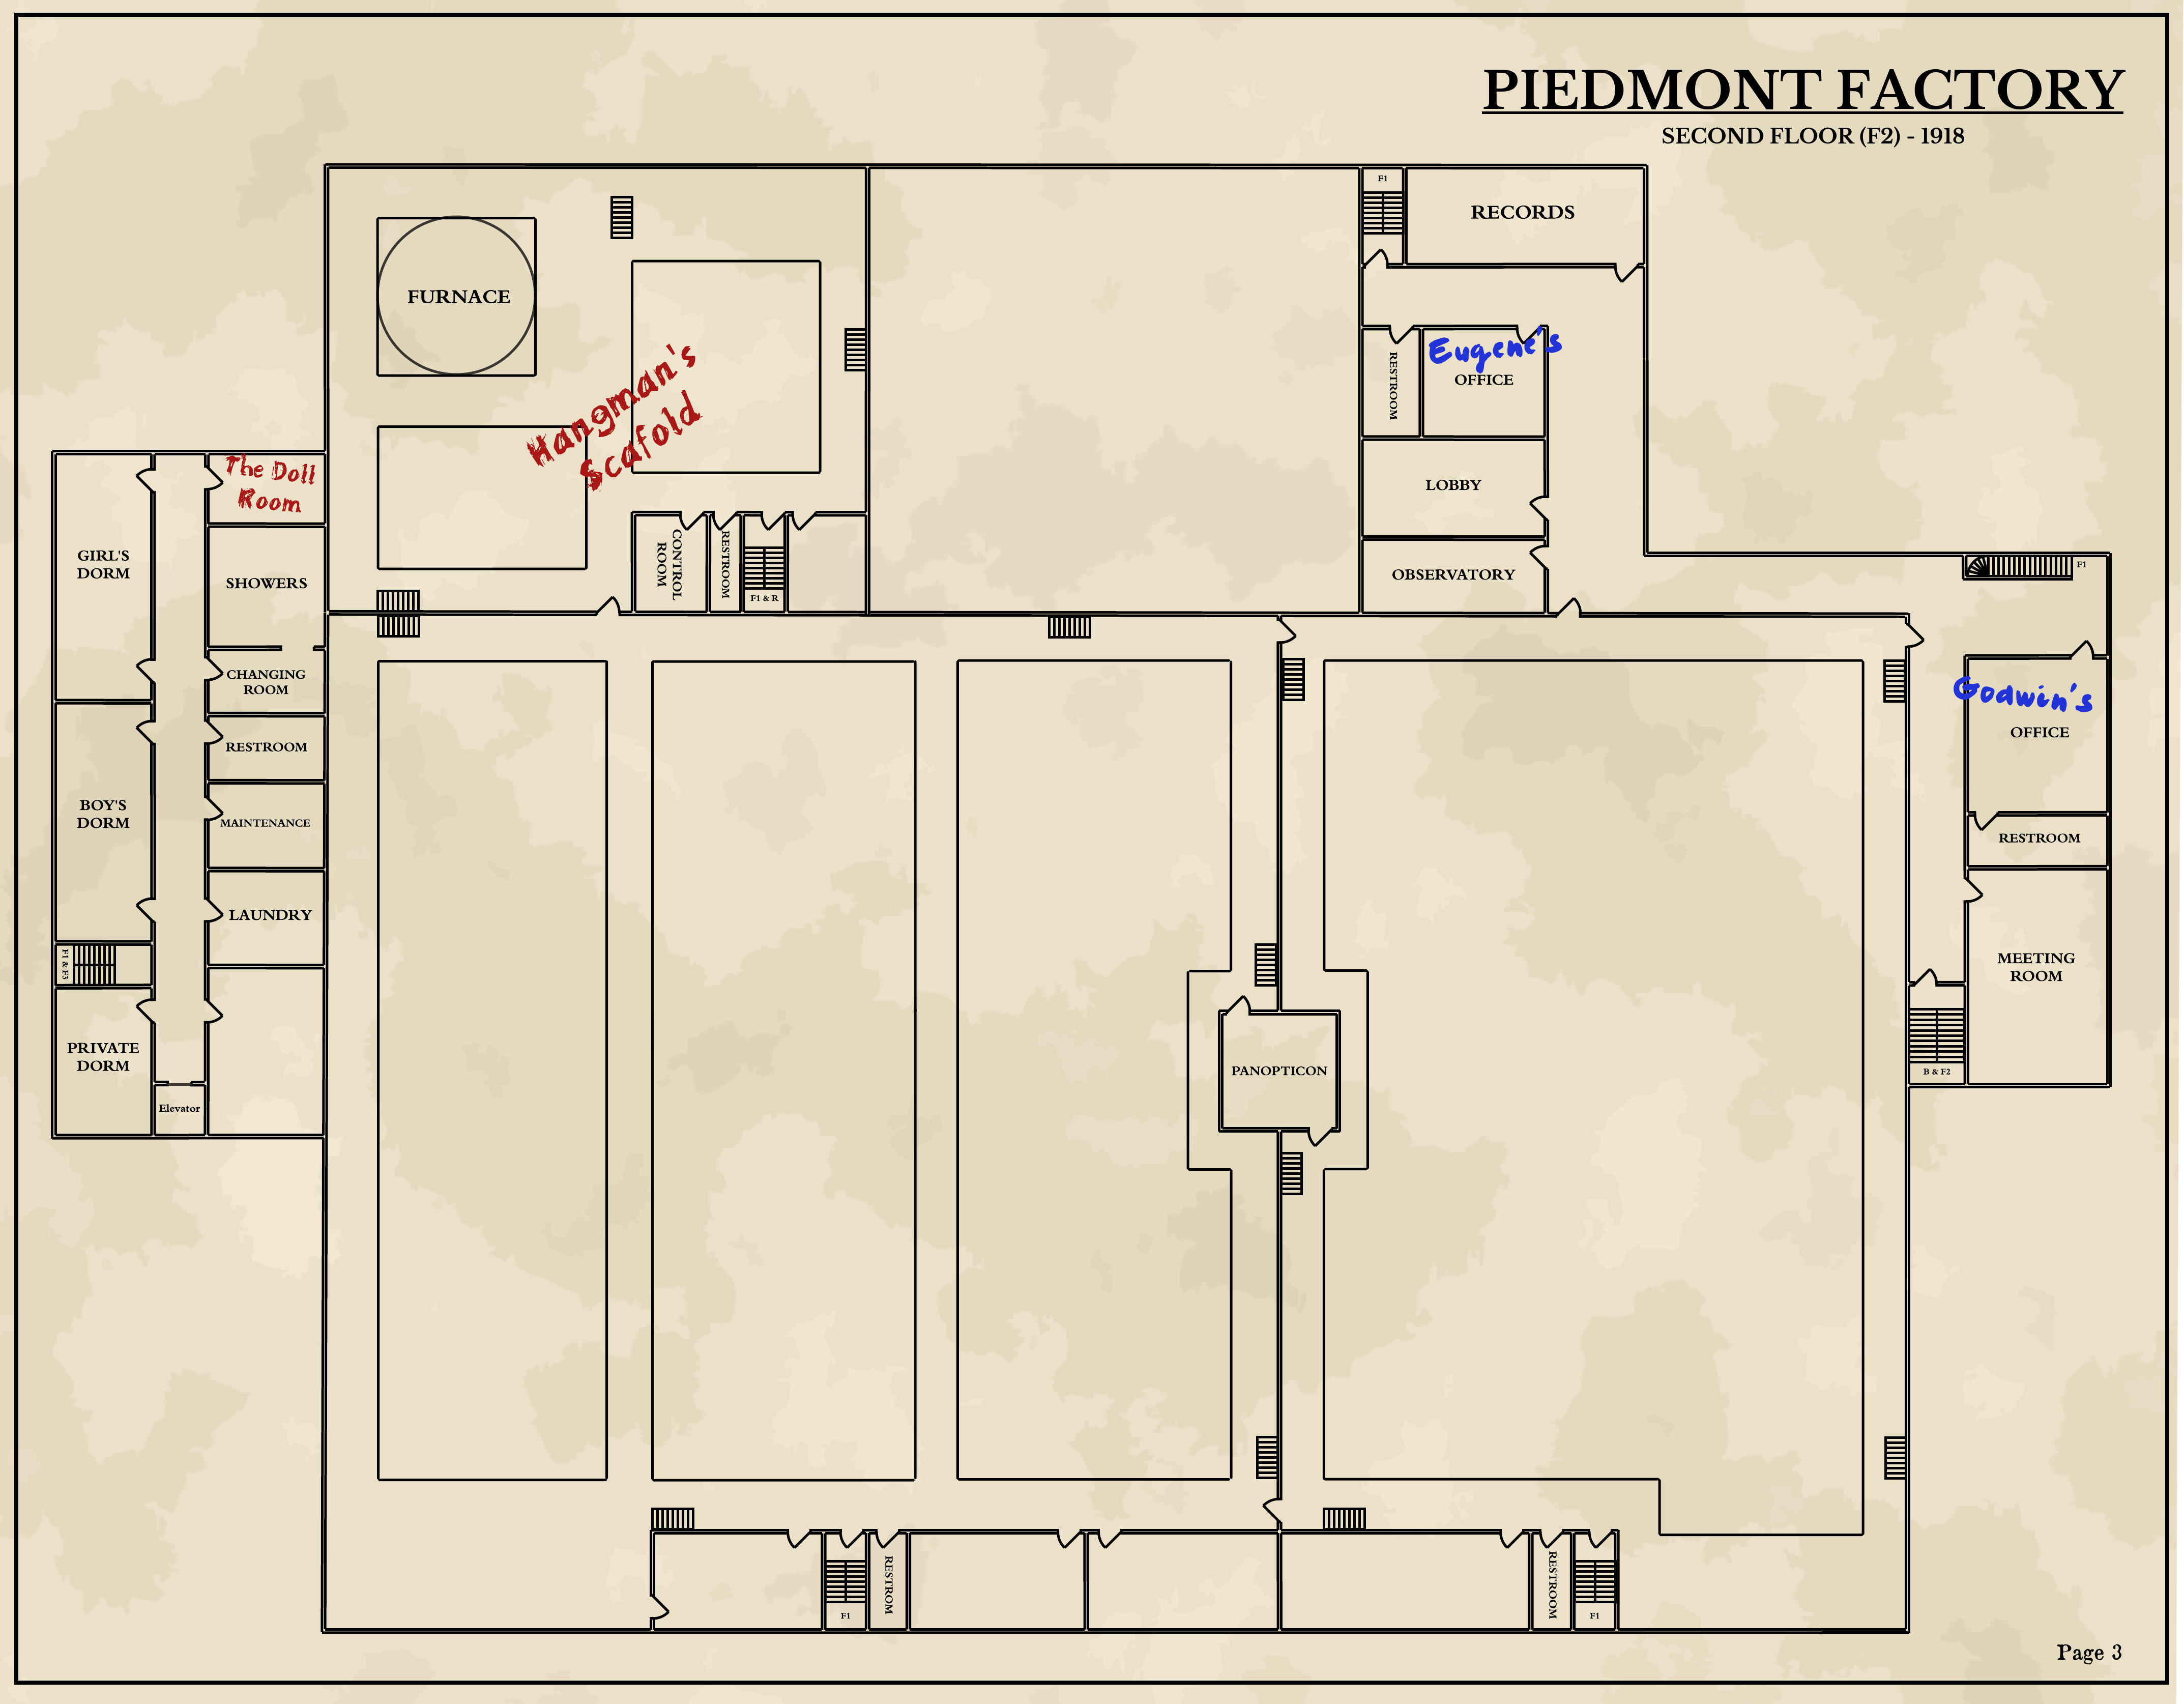 Piedmont Factory: Second Floor